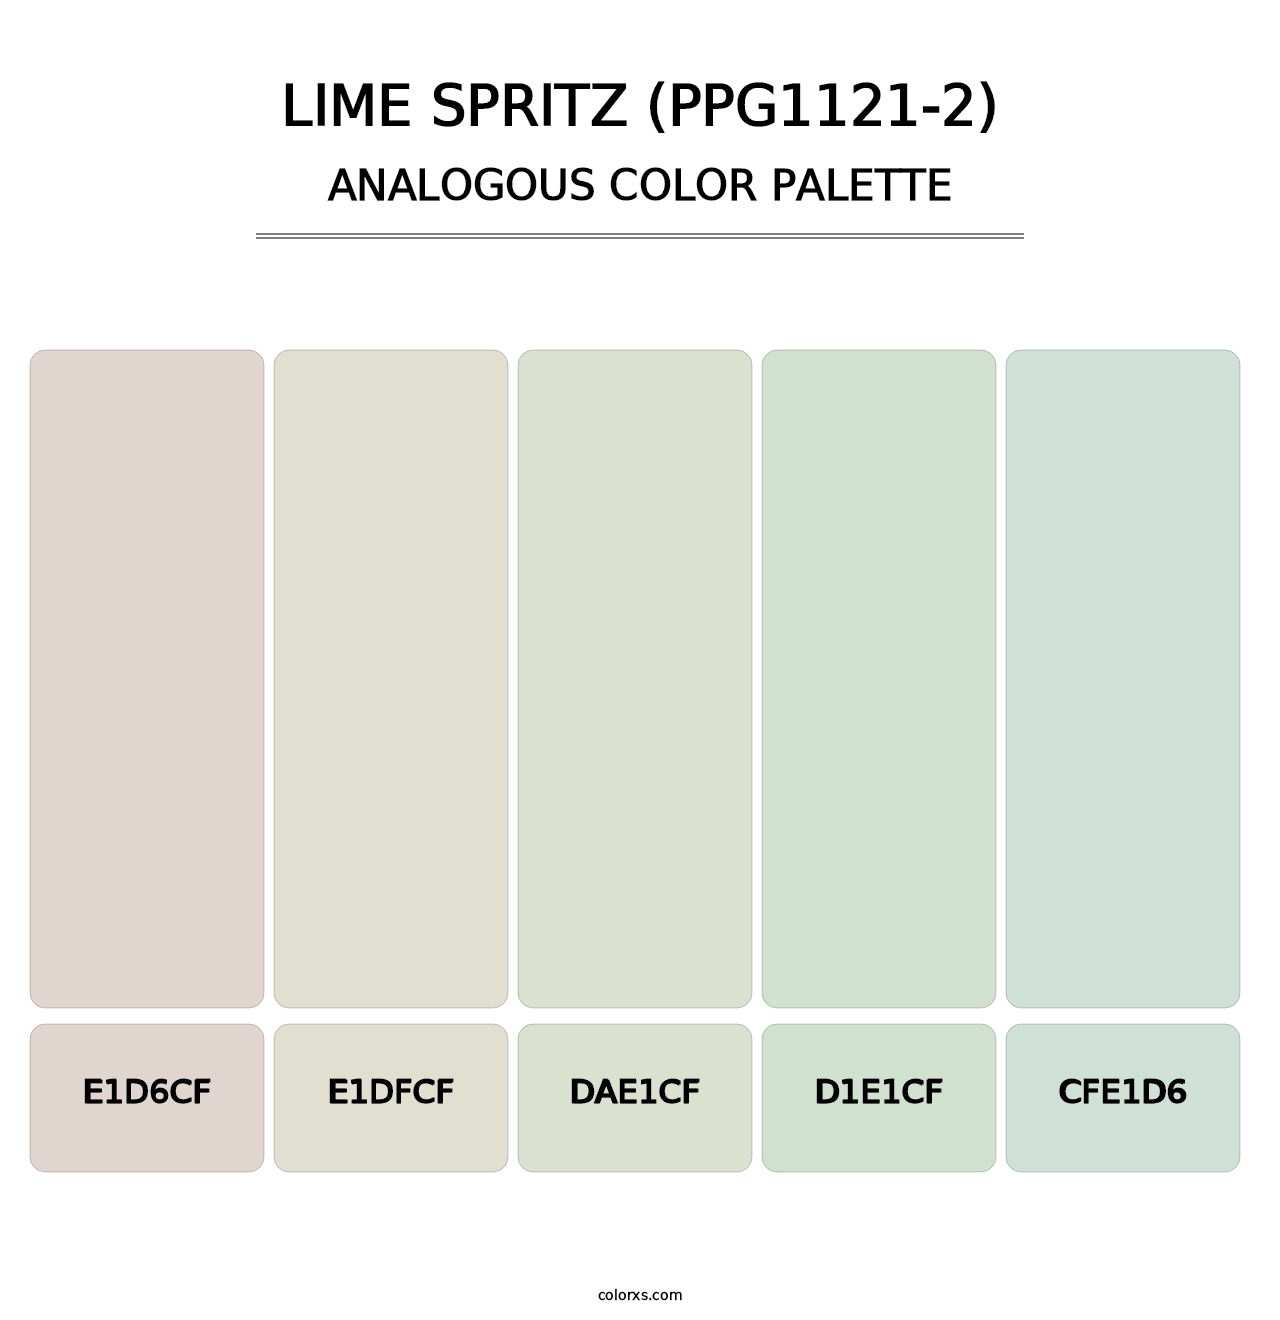 Lime Spritz (PPG1121-2) - Analogous Color Palette